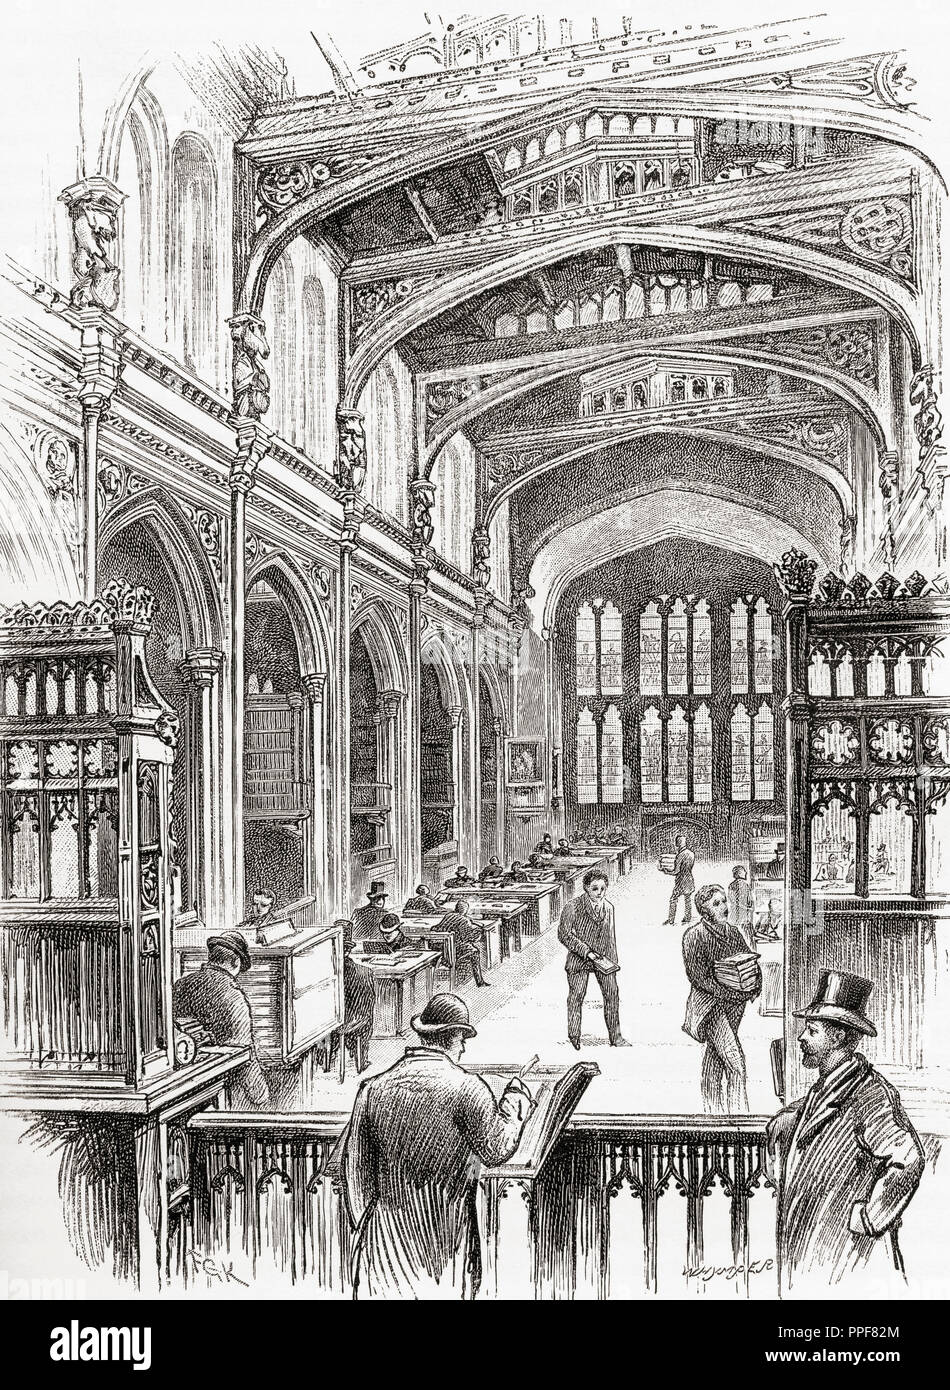 Die Alte Bibliothek, die Guildhall, London, England im 19. Jahrhundert. Von London Bilder, veröffentlicht 1890. Stockfoto